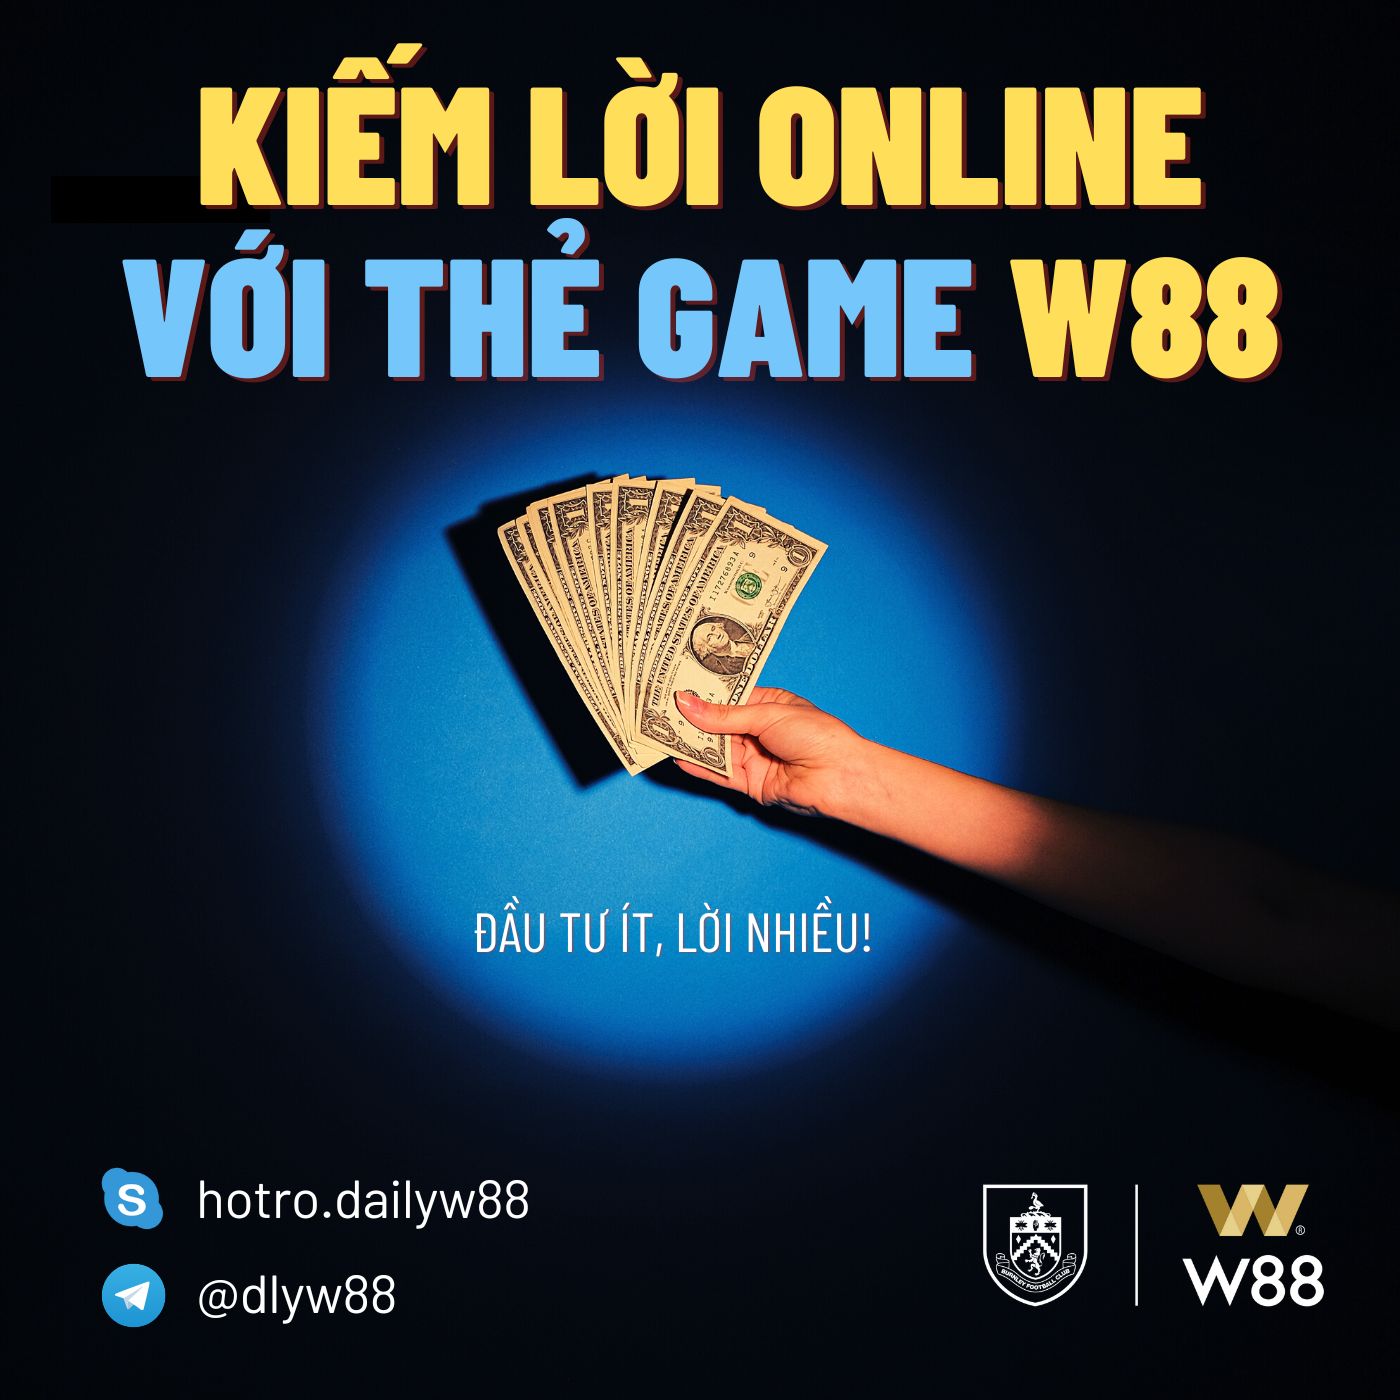 You are currently viewing KIẾM LỜI ONLINE VỚI THẺ GAME W88 – ĐẦU TƯ ÍT, LỜI NHIỀU!